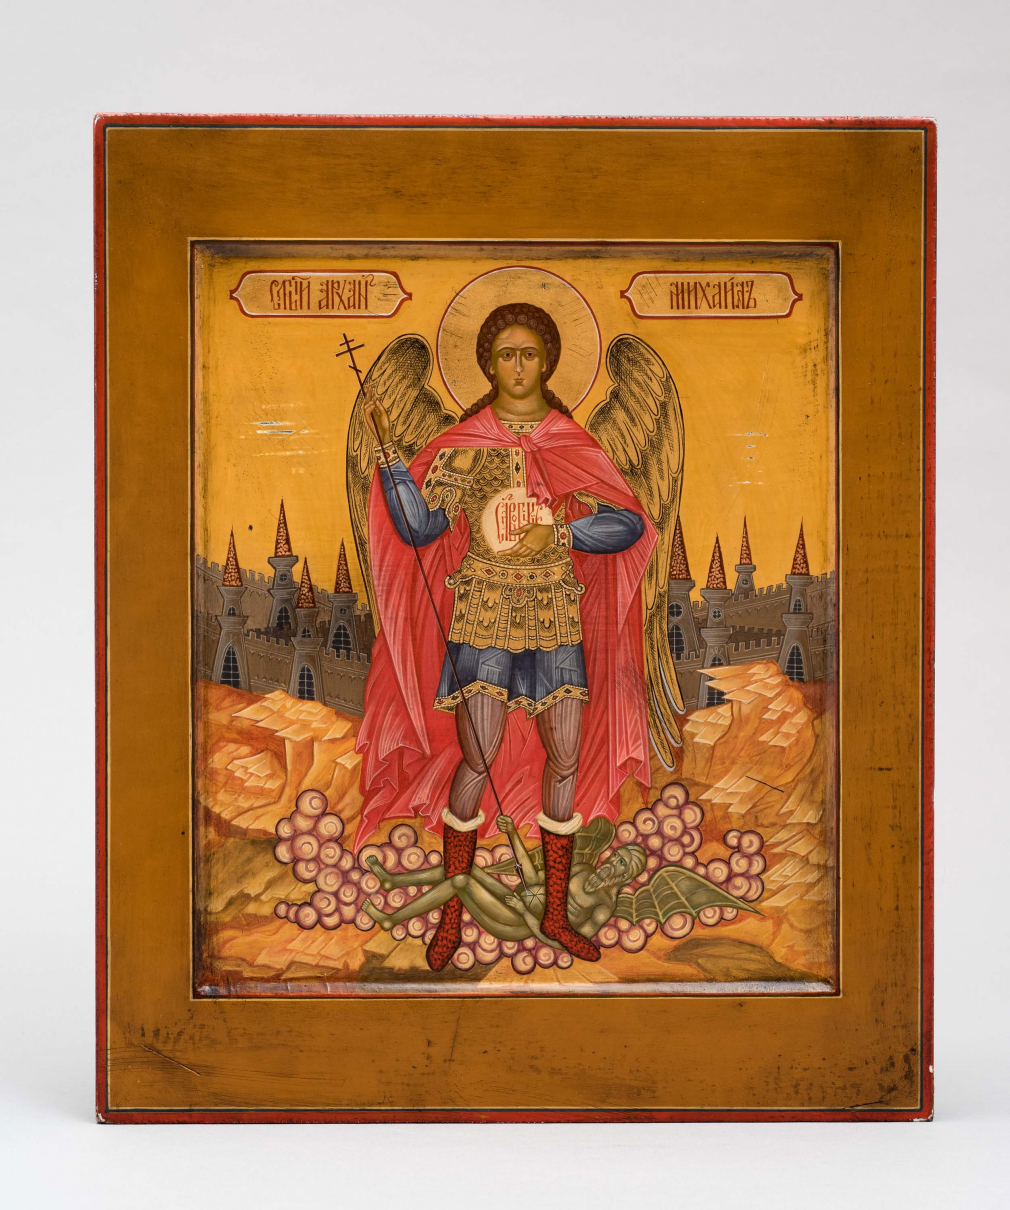 Архангел Михаил икона ручной работы купить в мастерской при храме